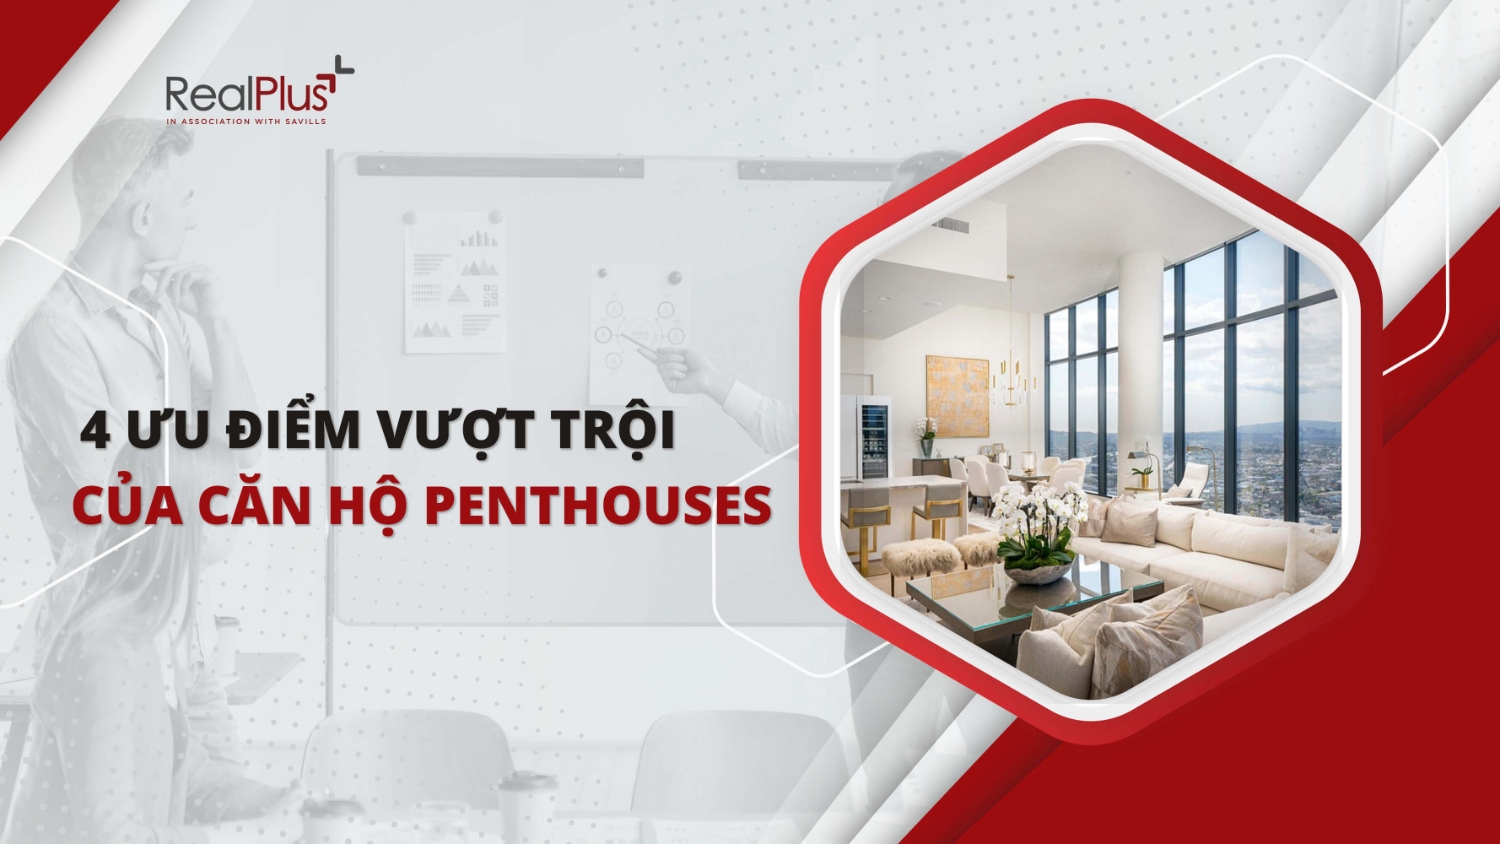 Căn hộ Penthouse là gì? 4 Ưu điểm vượt trội của penthouses